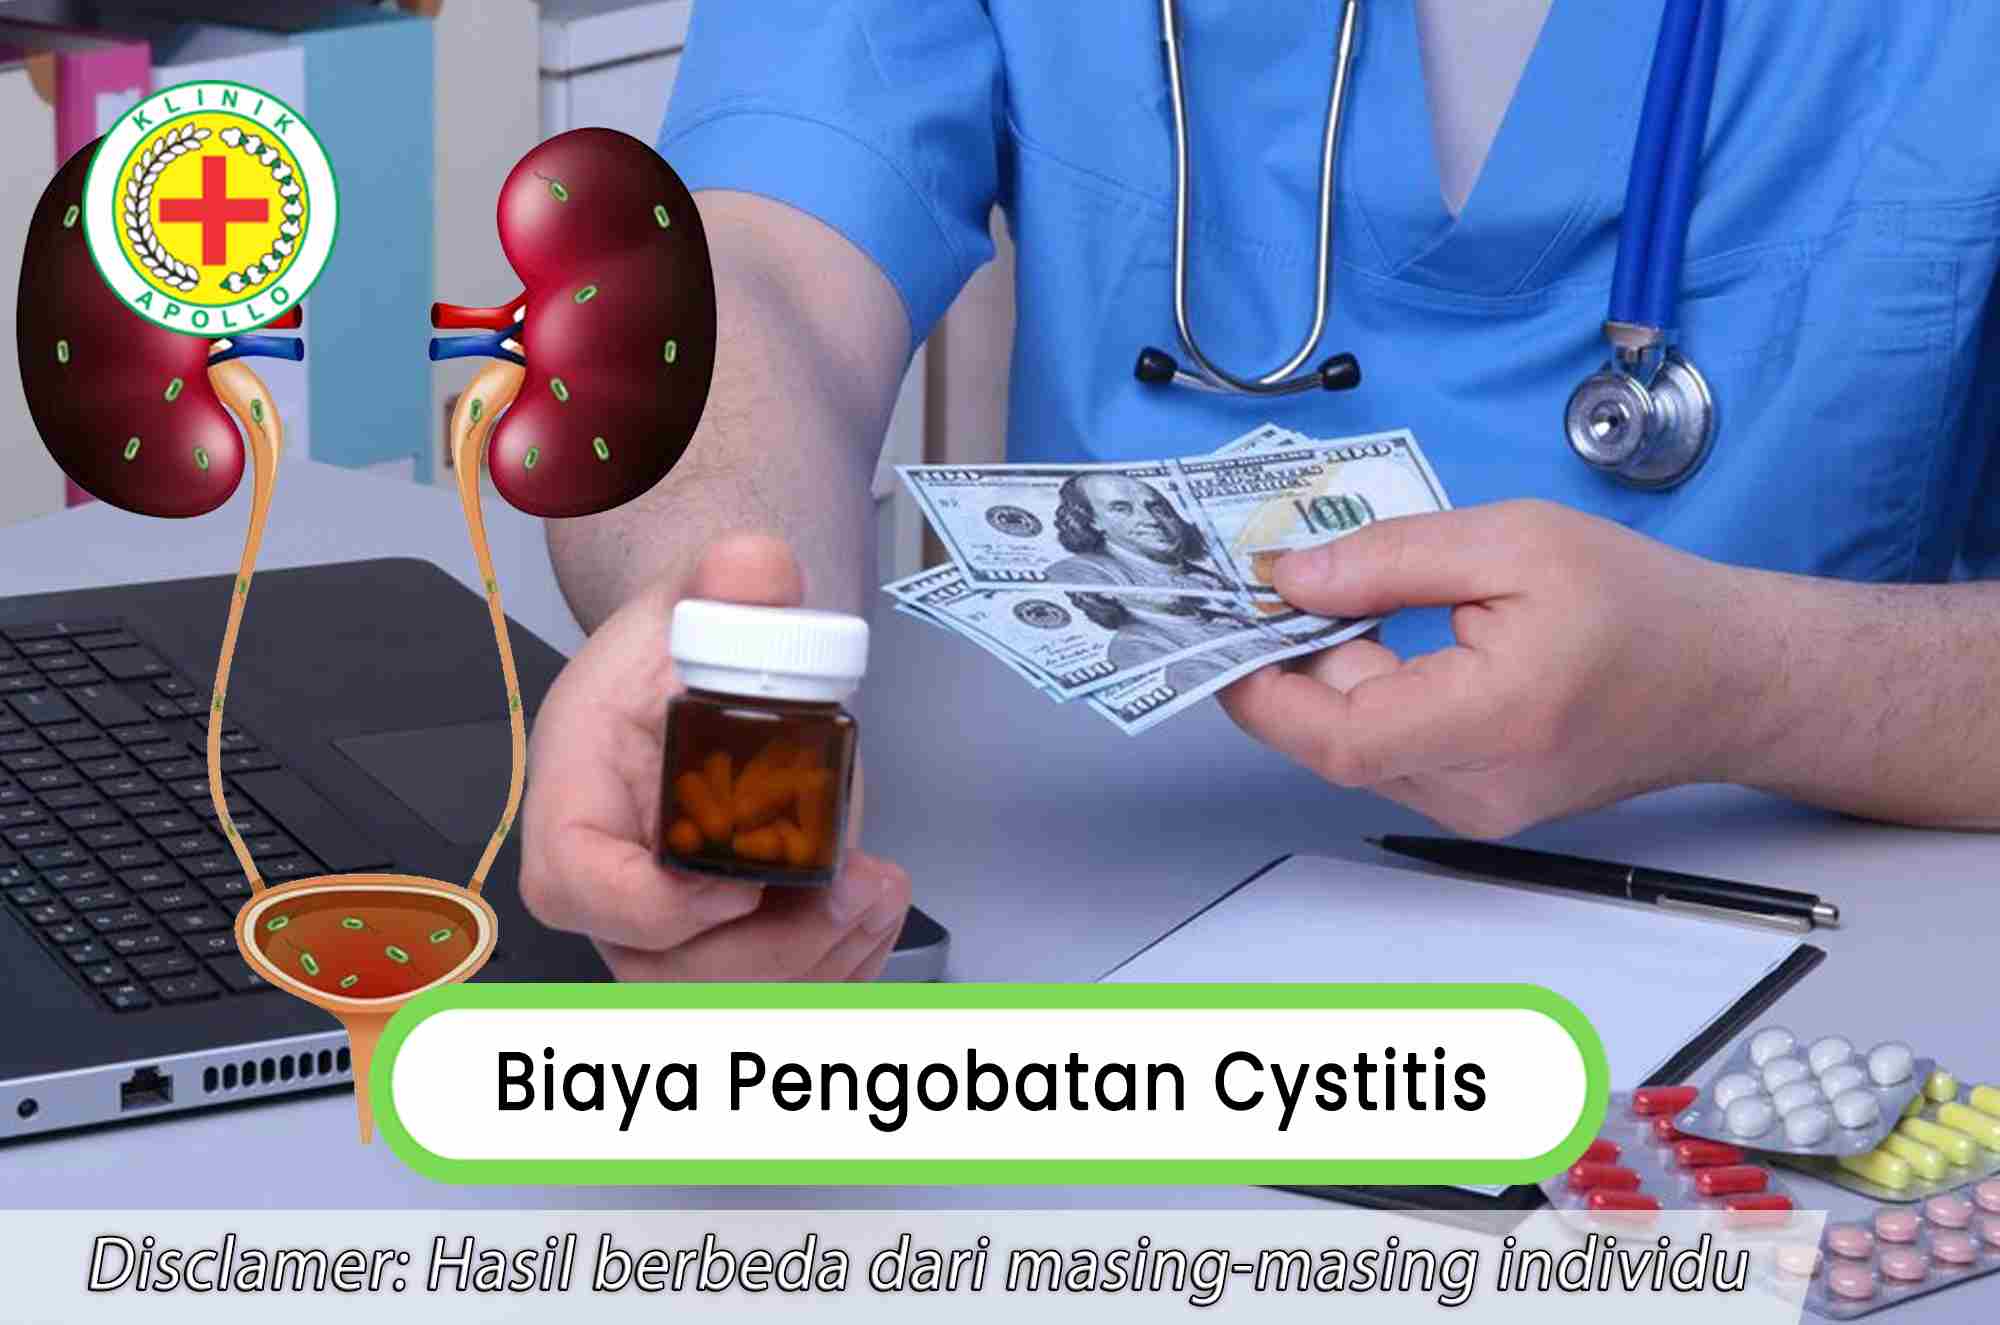 Dapatkan biaya pengobatan cystitis yang terjangkau hanya di Klinik Apollo Jakarta.